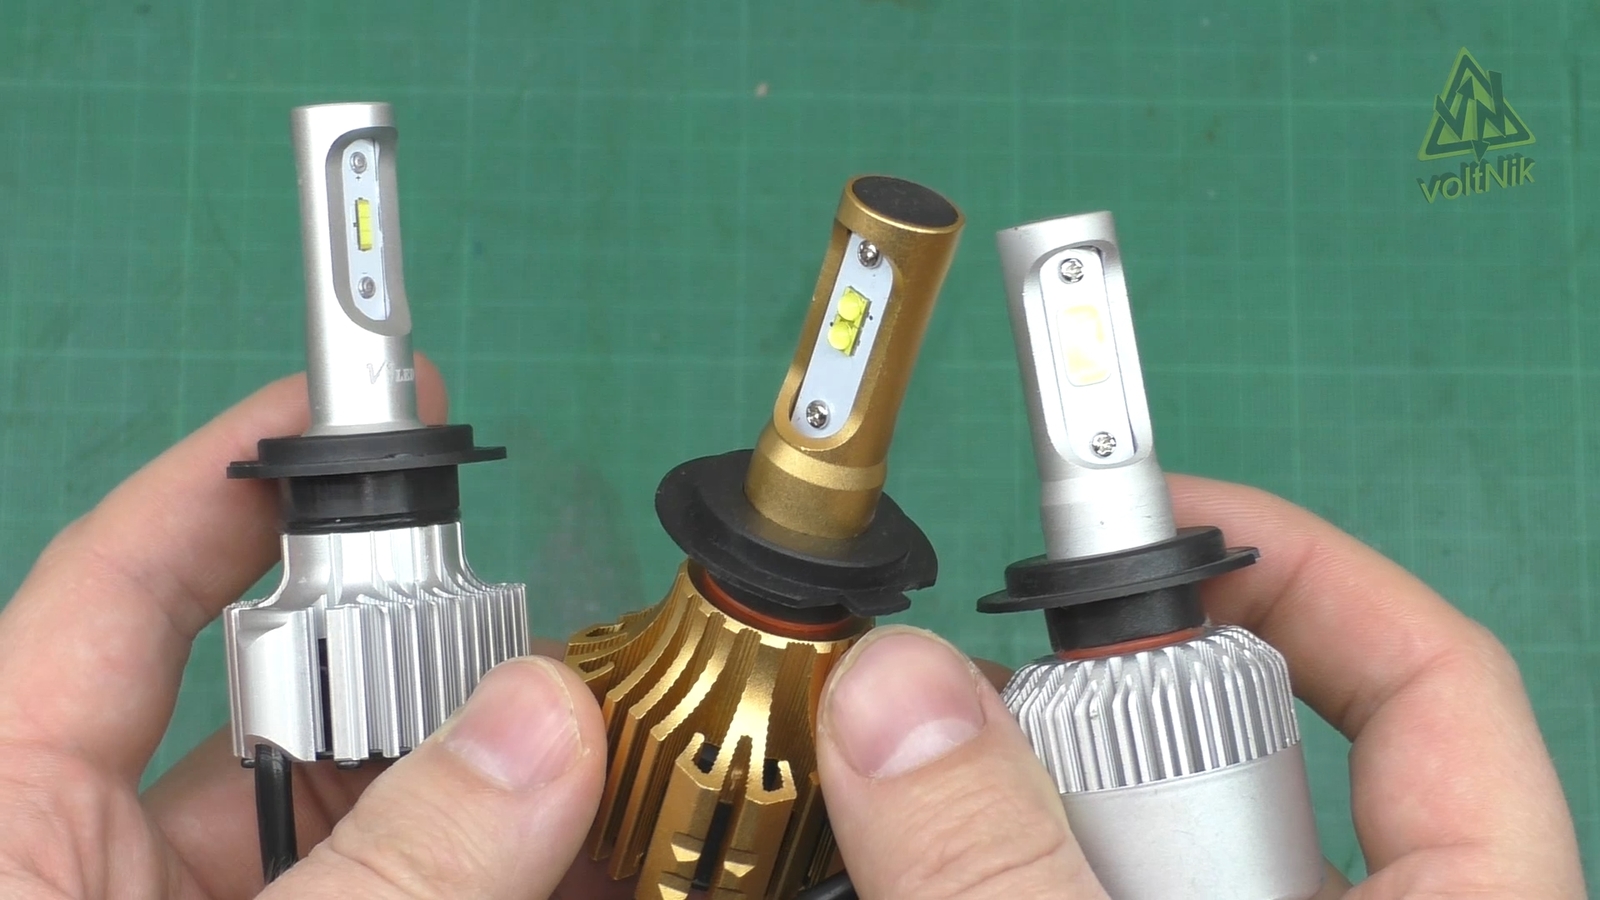 Автономное освещение своими руками: как сделать фонарик, если нет электричества (видео)